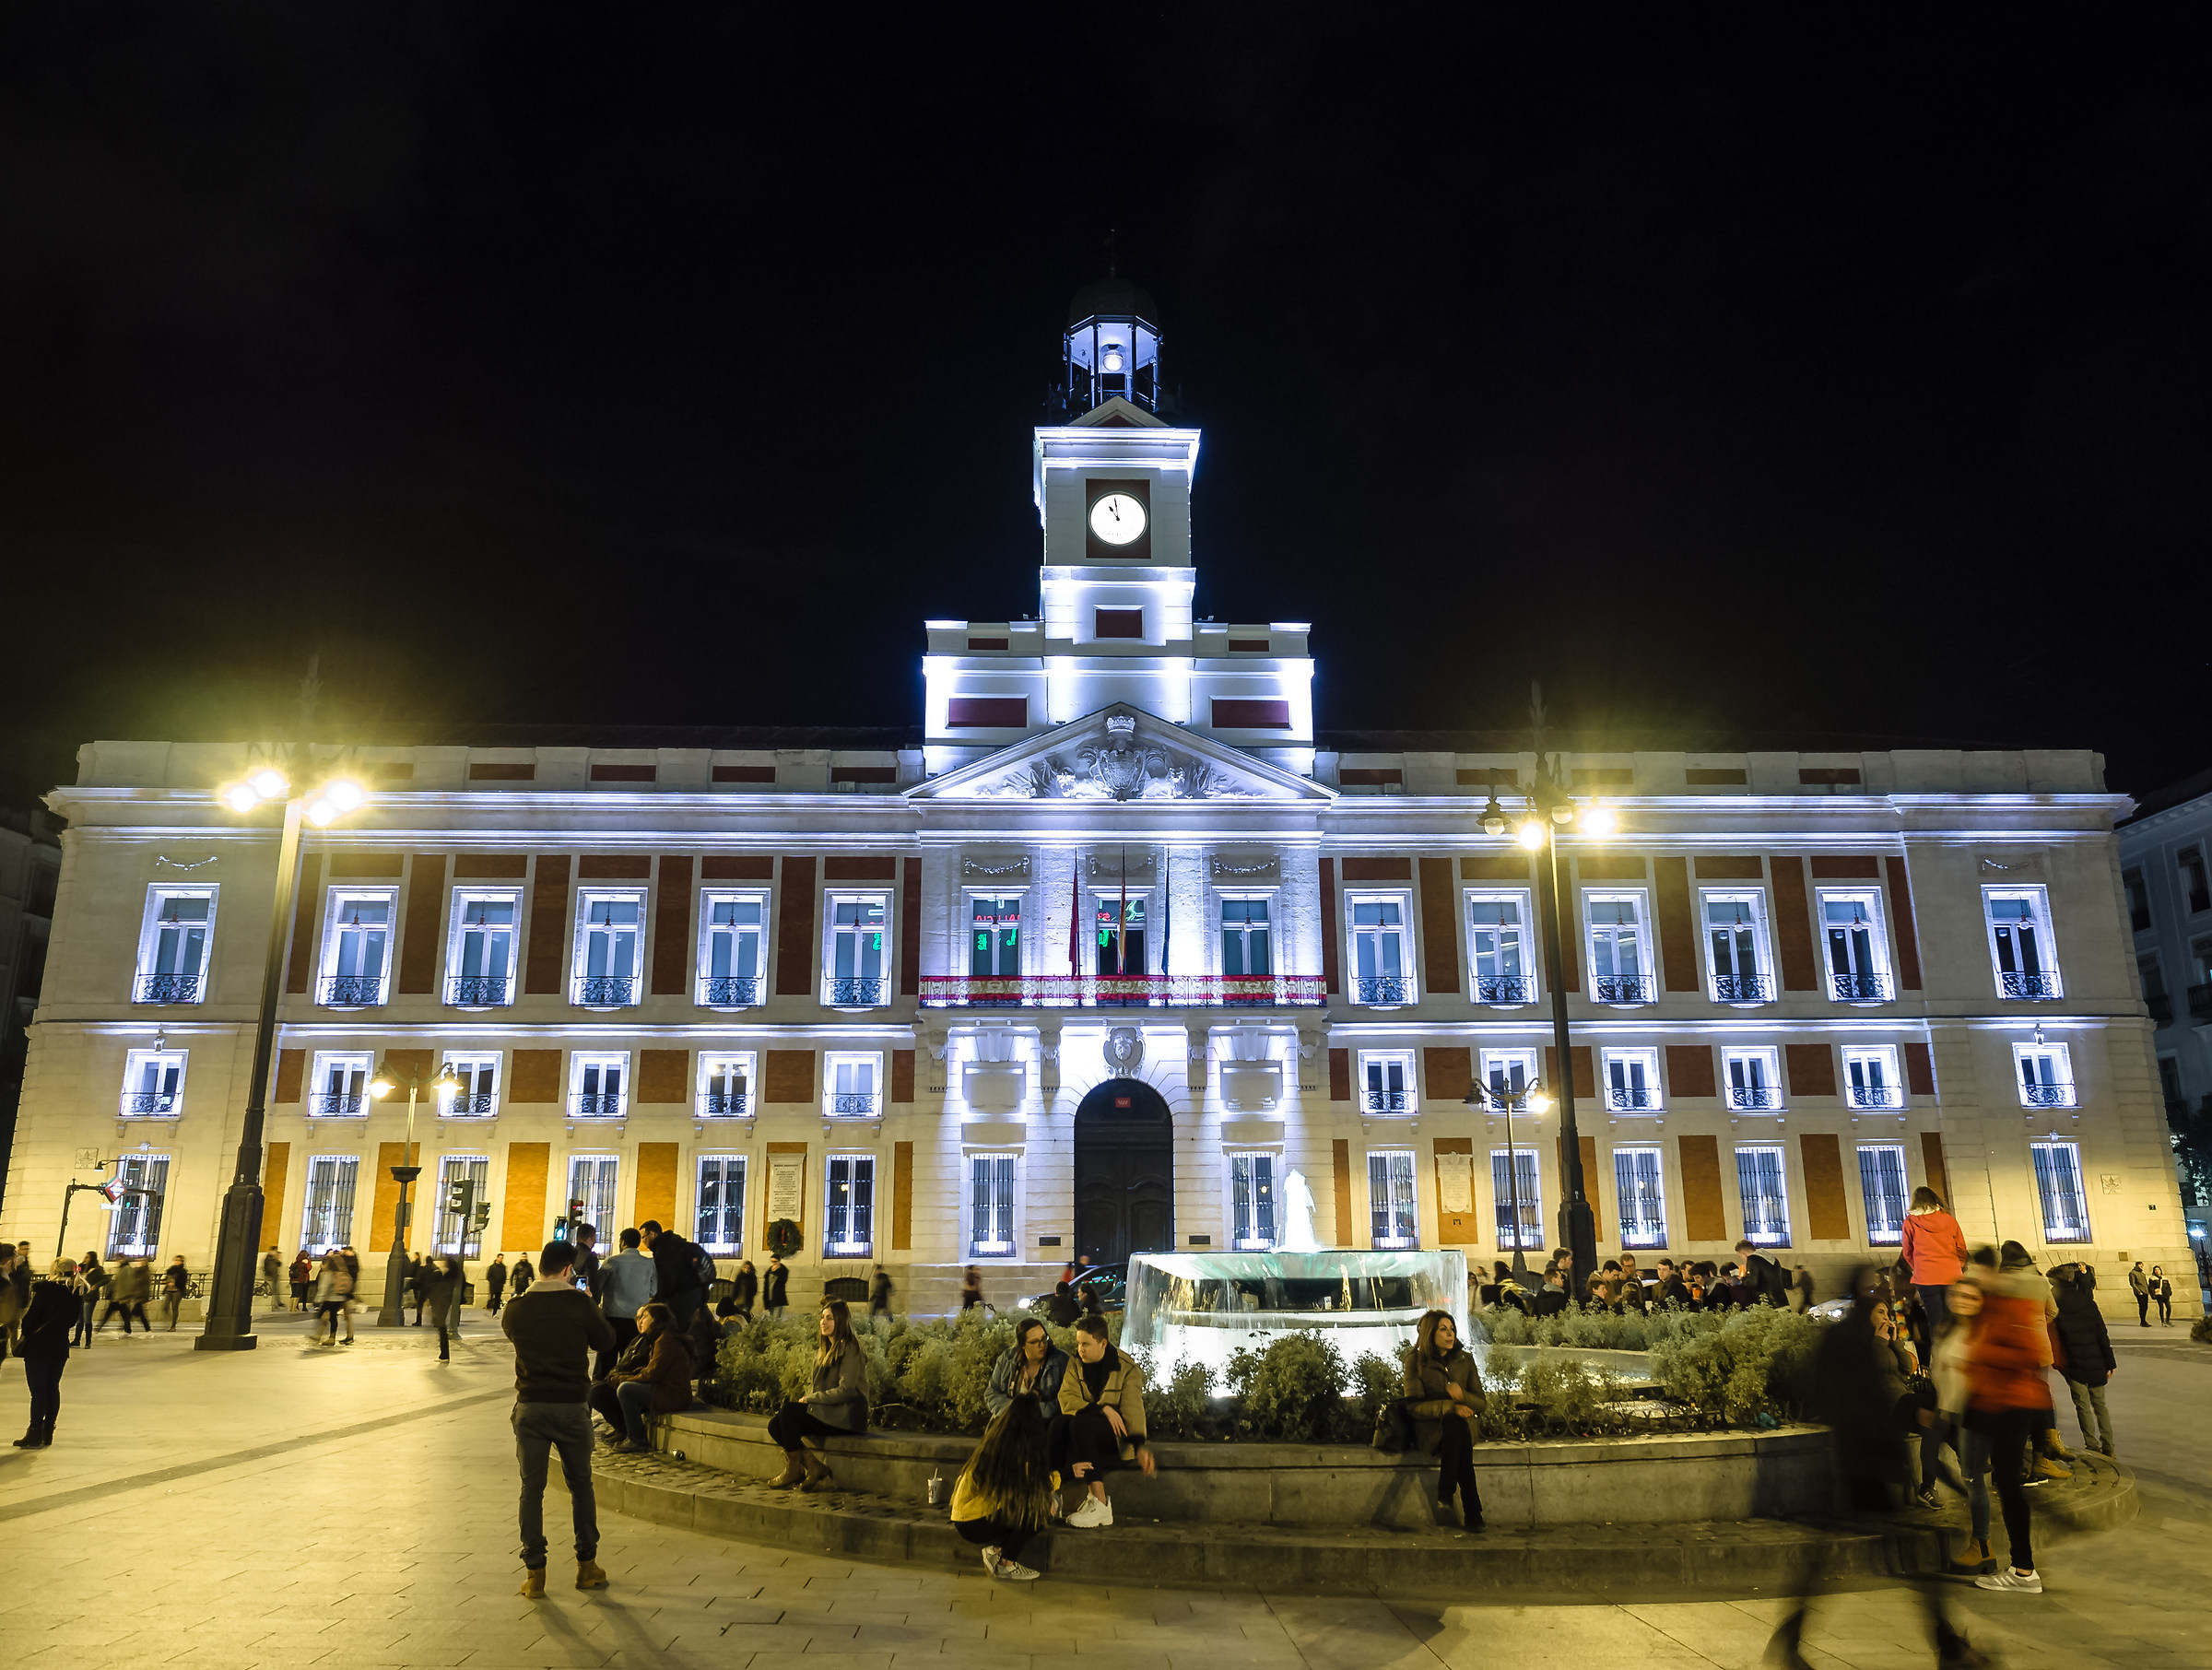 Puerta del Sol by night...